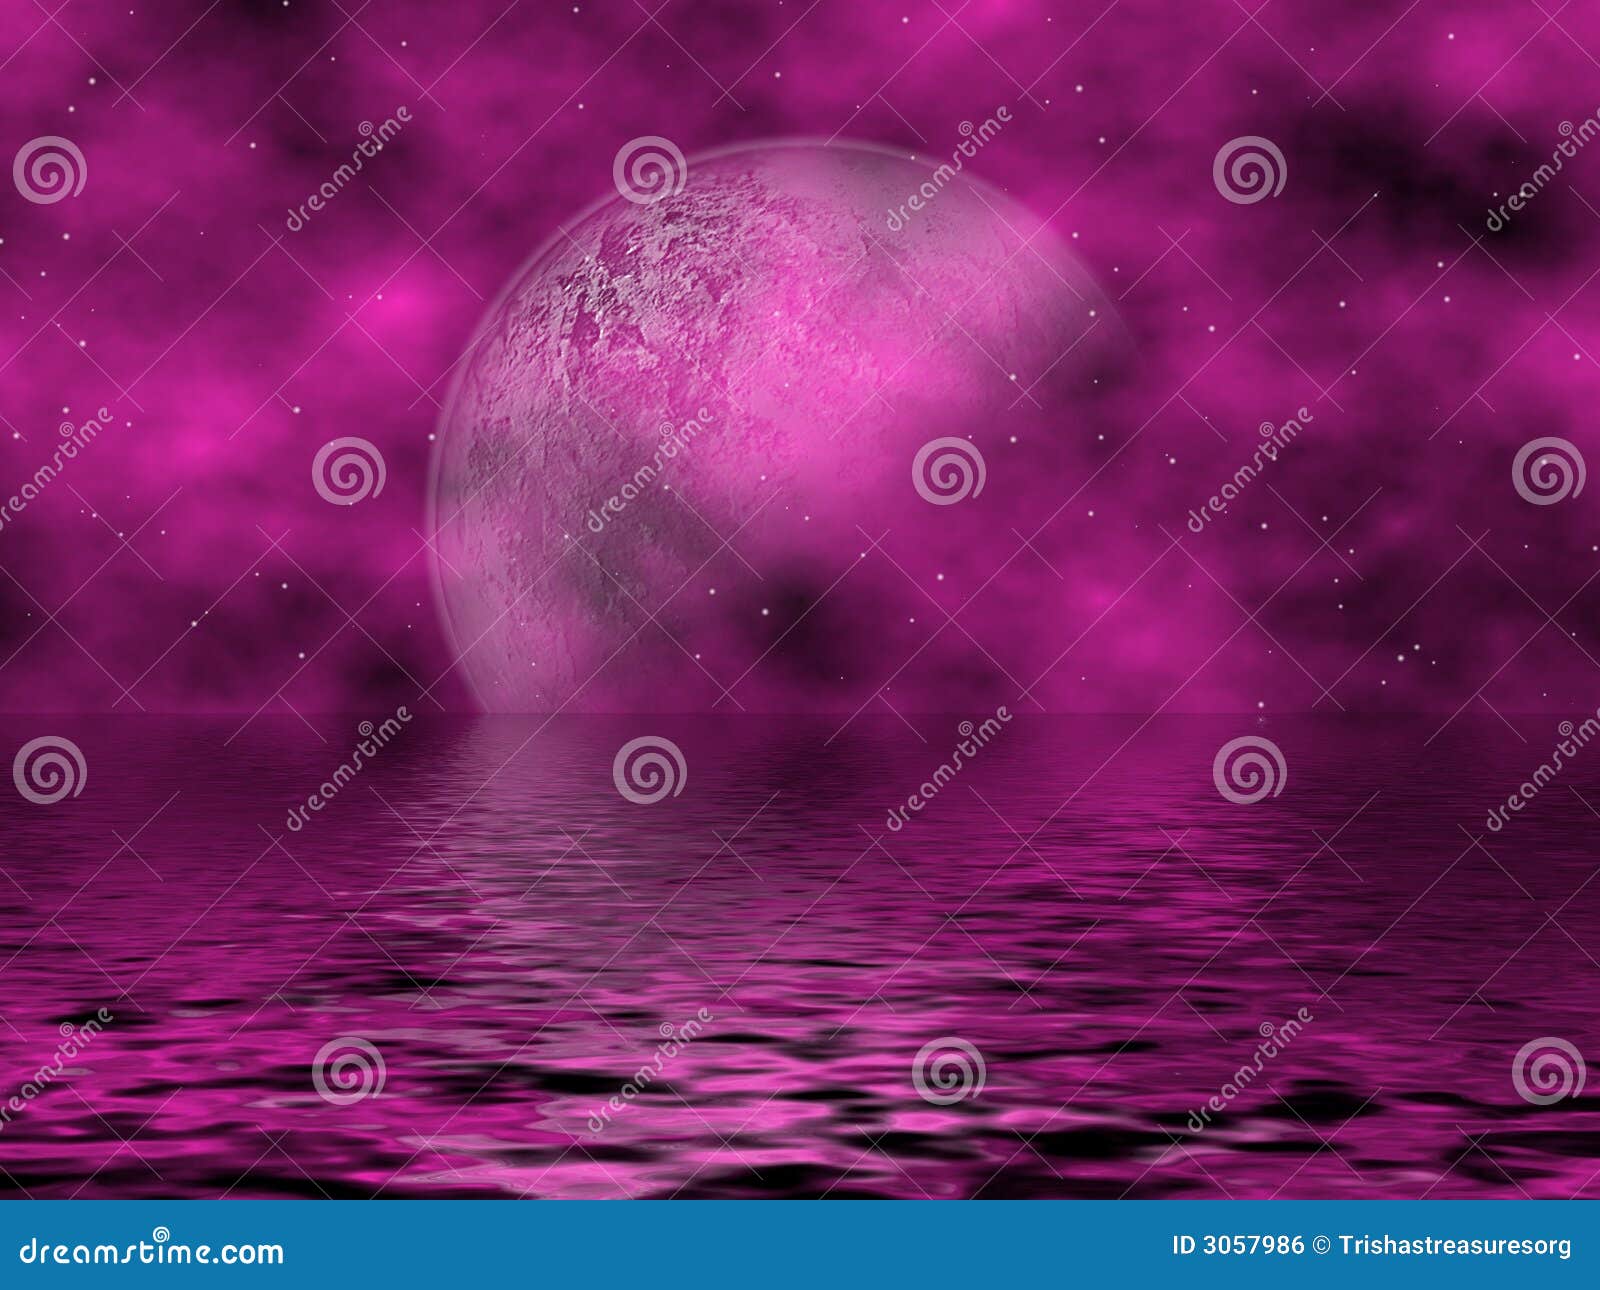 magenta moon & water